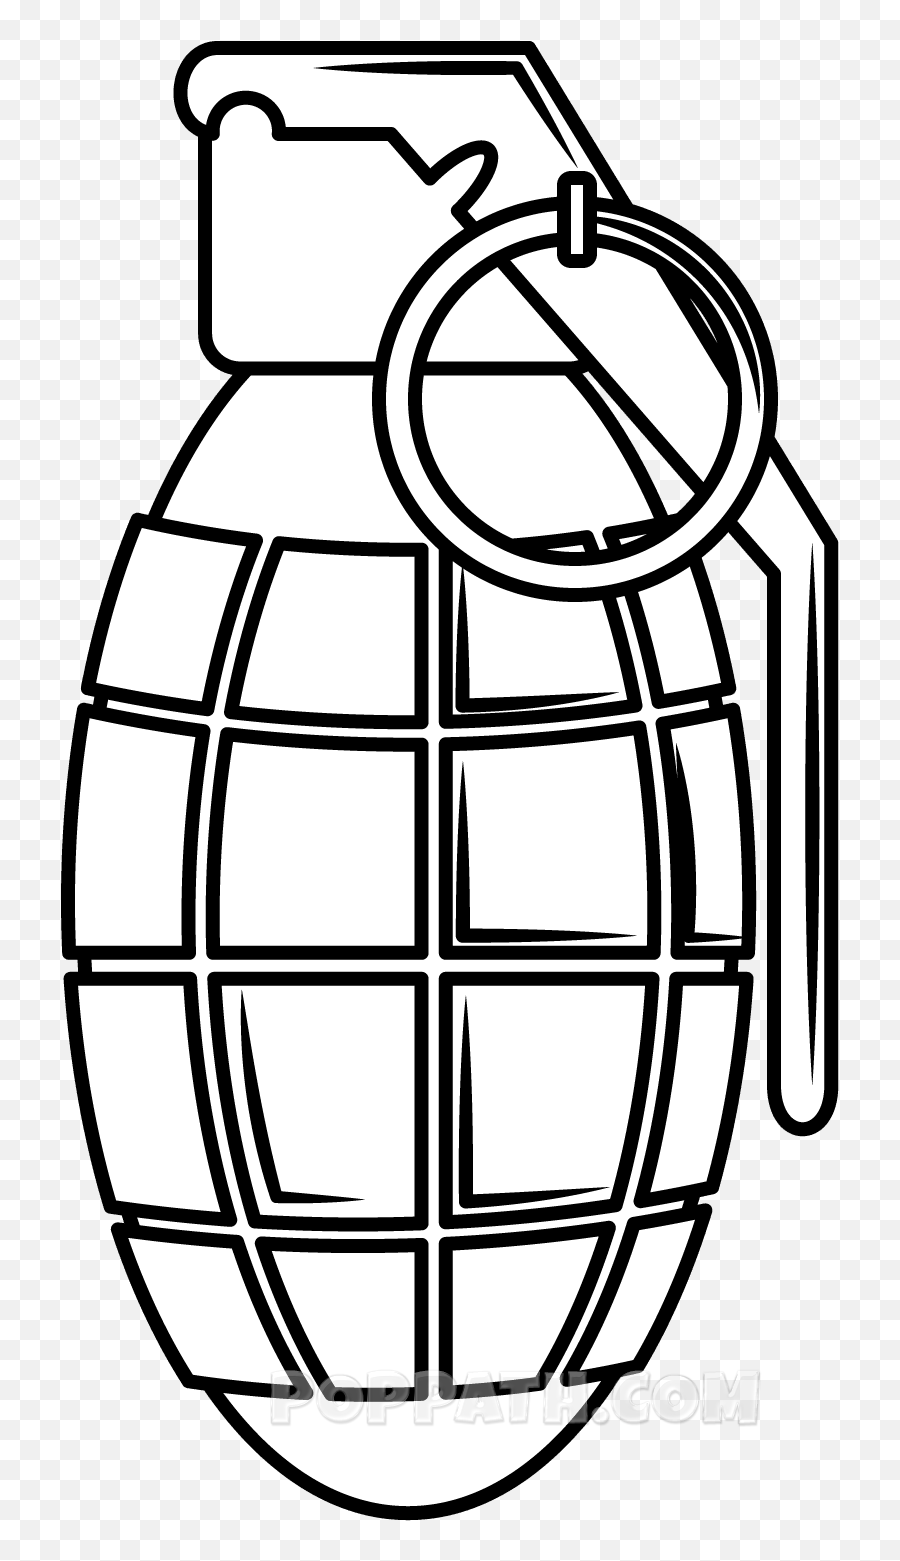 How To Draw A Grenade - Grenade Clipart Emoji,Grenade Emoji